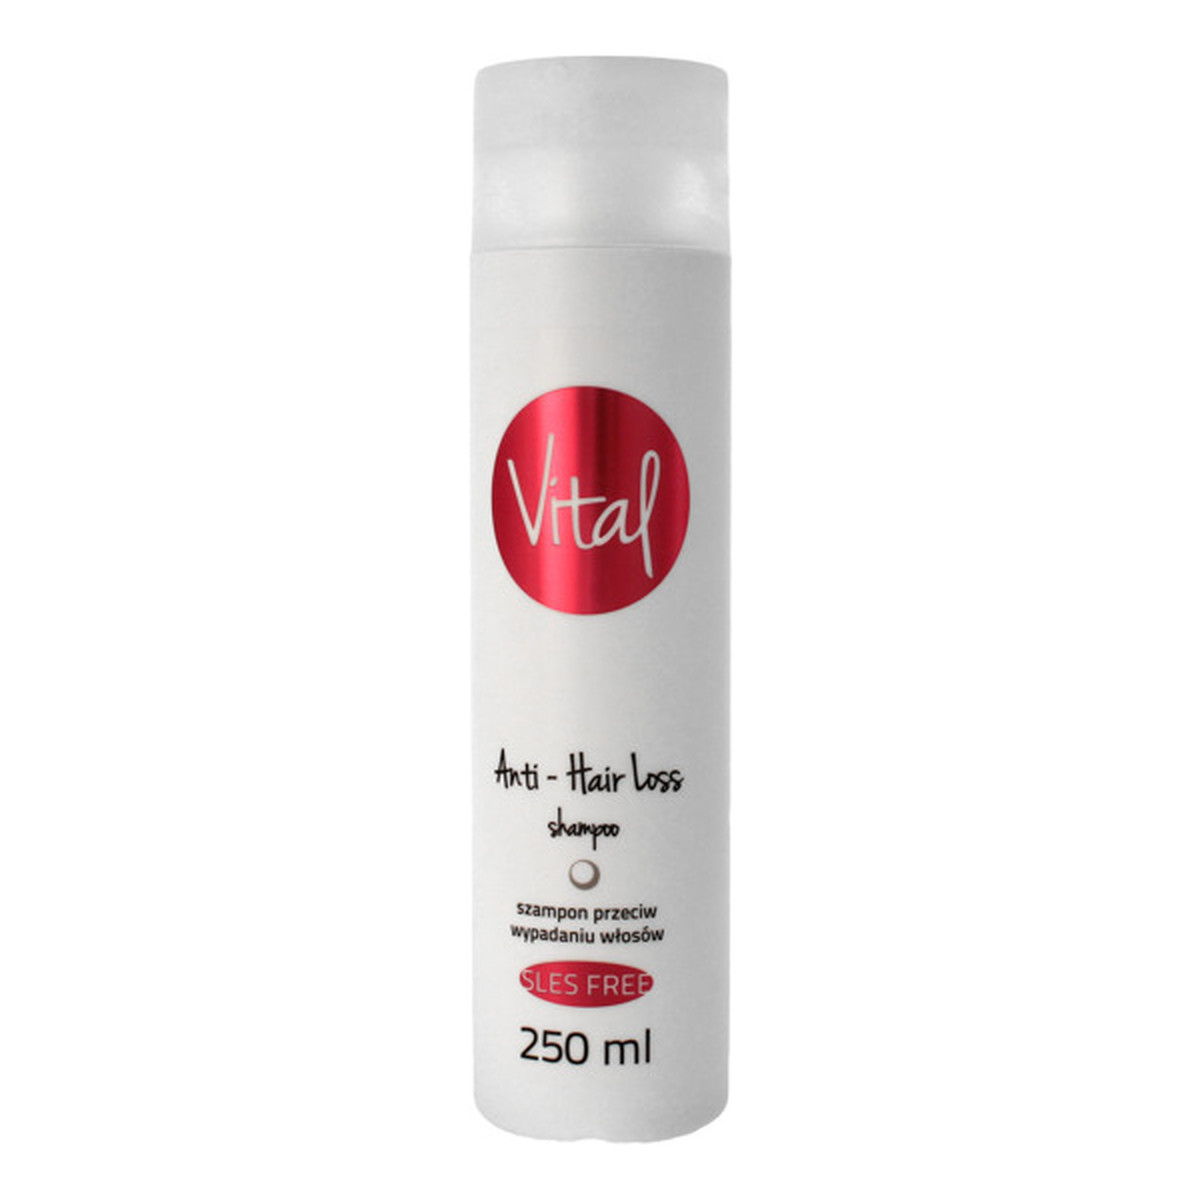 Stapiz Vital Anti - Hair Loss Shampoo Szampon przeciw wypadaniu włosów 250ml